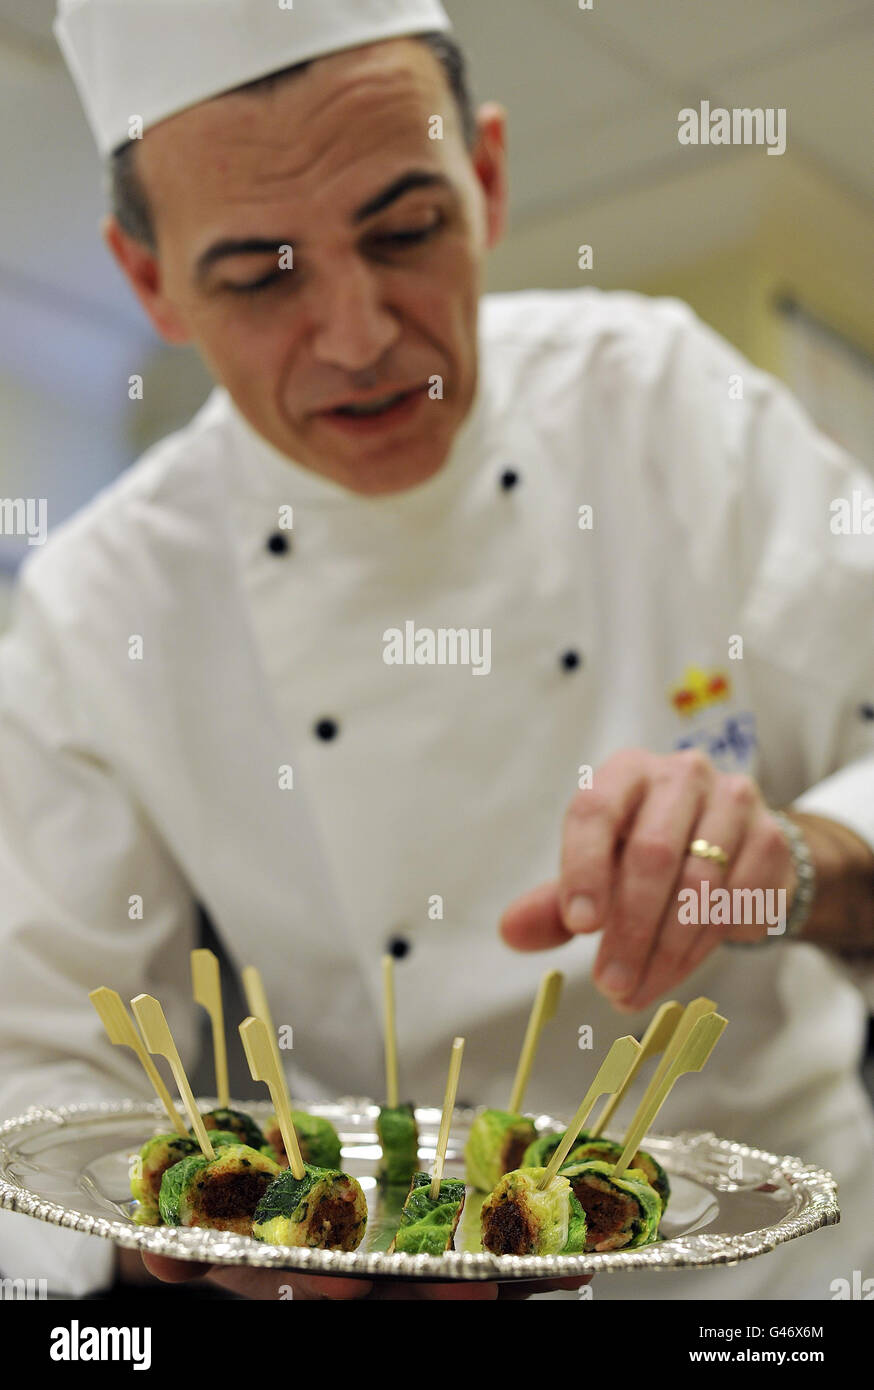 Der Chefkoch Mark Flanagan, Chef der Küche im Buckingham Palace, arrangiert ein Tablett mit Bubble und Squeak Confit mit Lammkanapees, Speisen, die dem ähneln, das normalerweise bei Empfängen im Palast serviert wird. Stockfoto